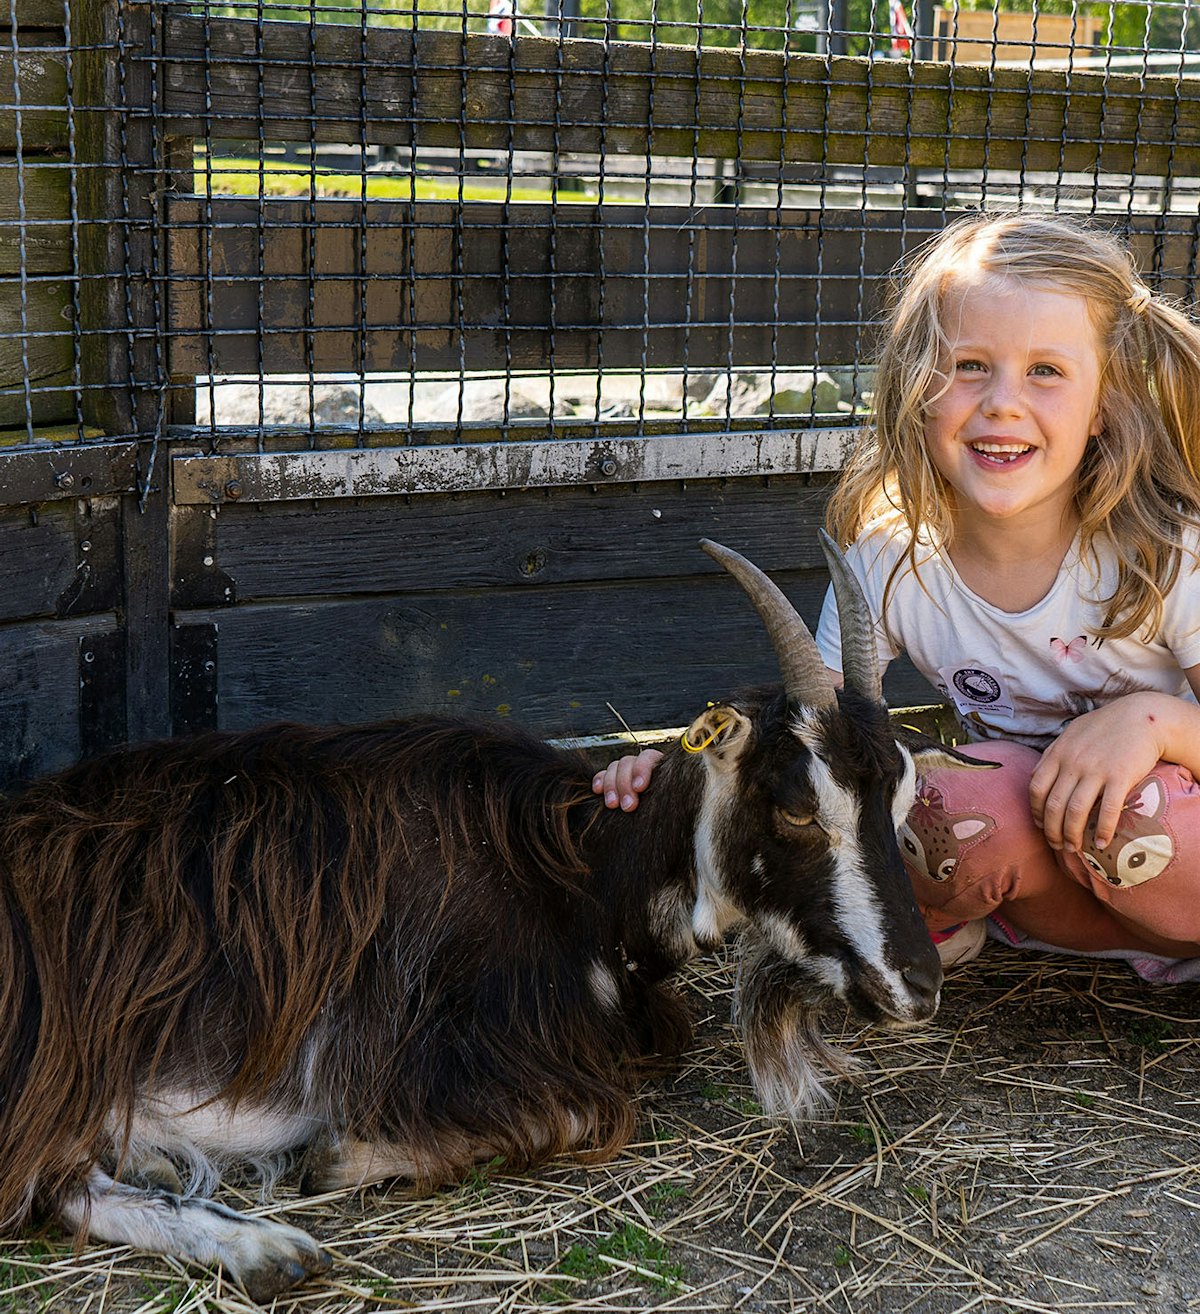 Ekeberg Animal Park, little girl petting a goat